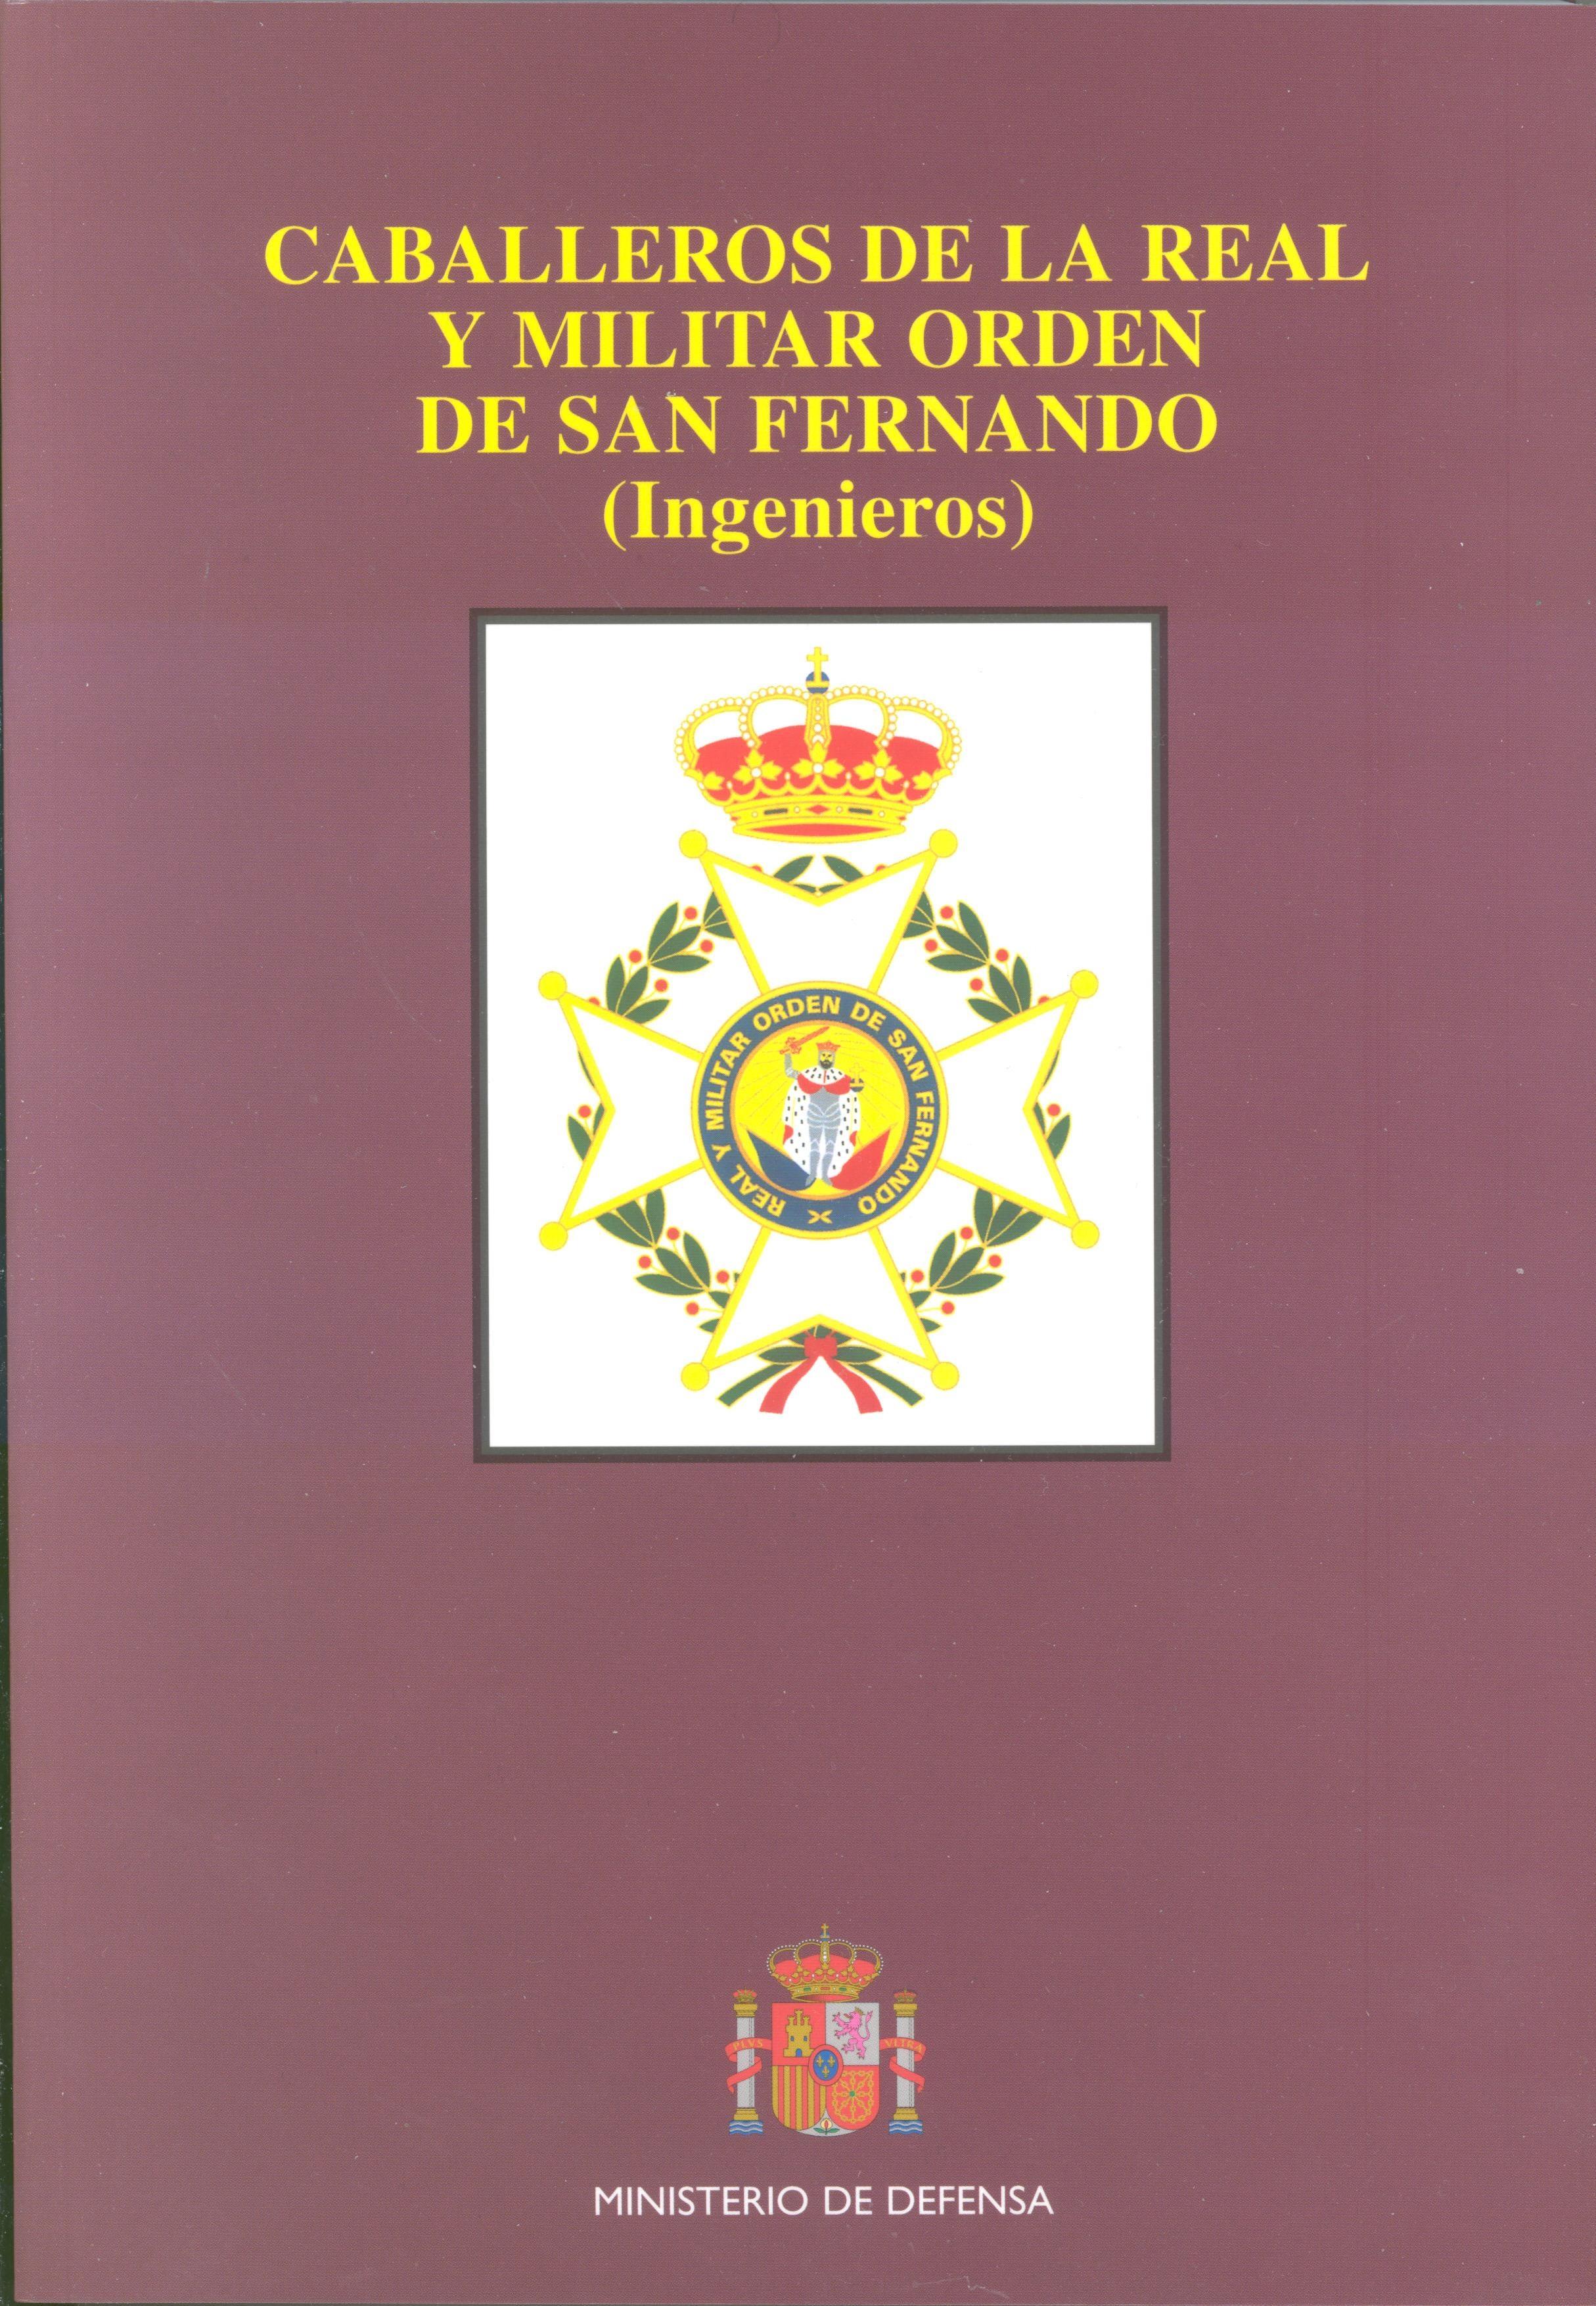 Caballeros de la real y militar orden de San Fernando "(Intendencia, Cuerpos comunes y Cuerpos disueltos)"